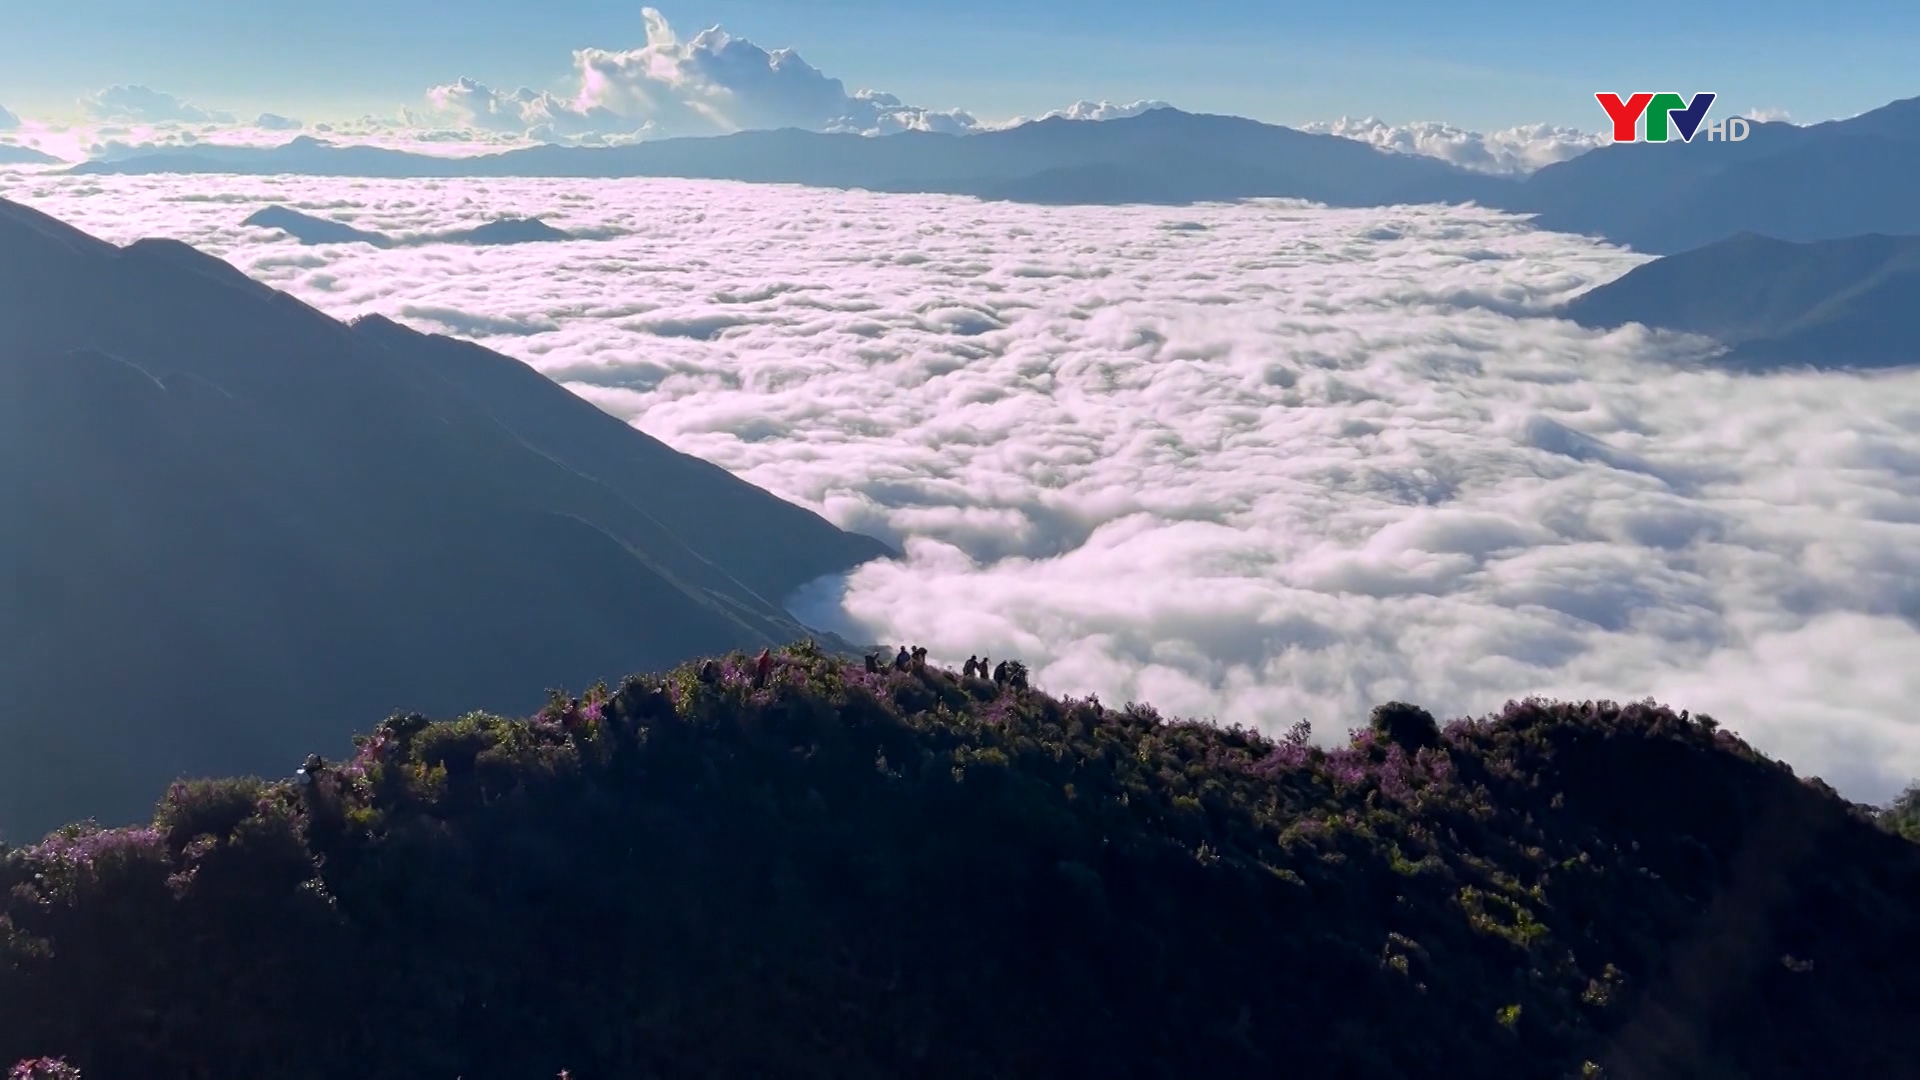 Trạm Tấu khởi động mùa leo núi chinh phục đỉnh cao Tà Xùa, Tà Chì Nhù năm 2022